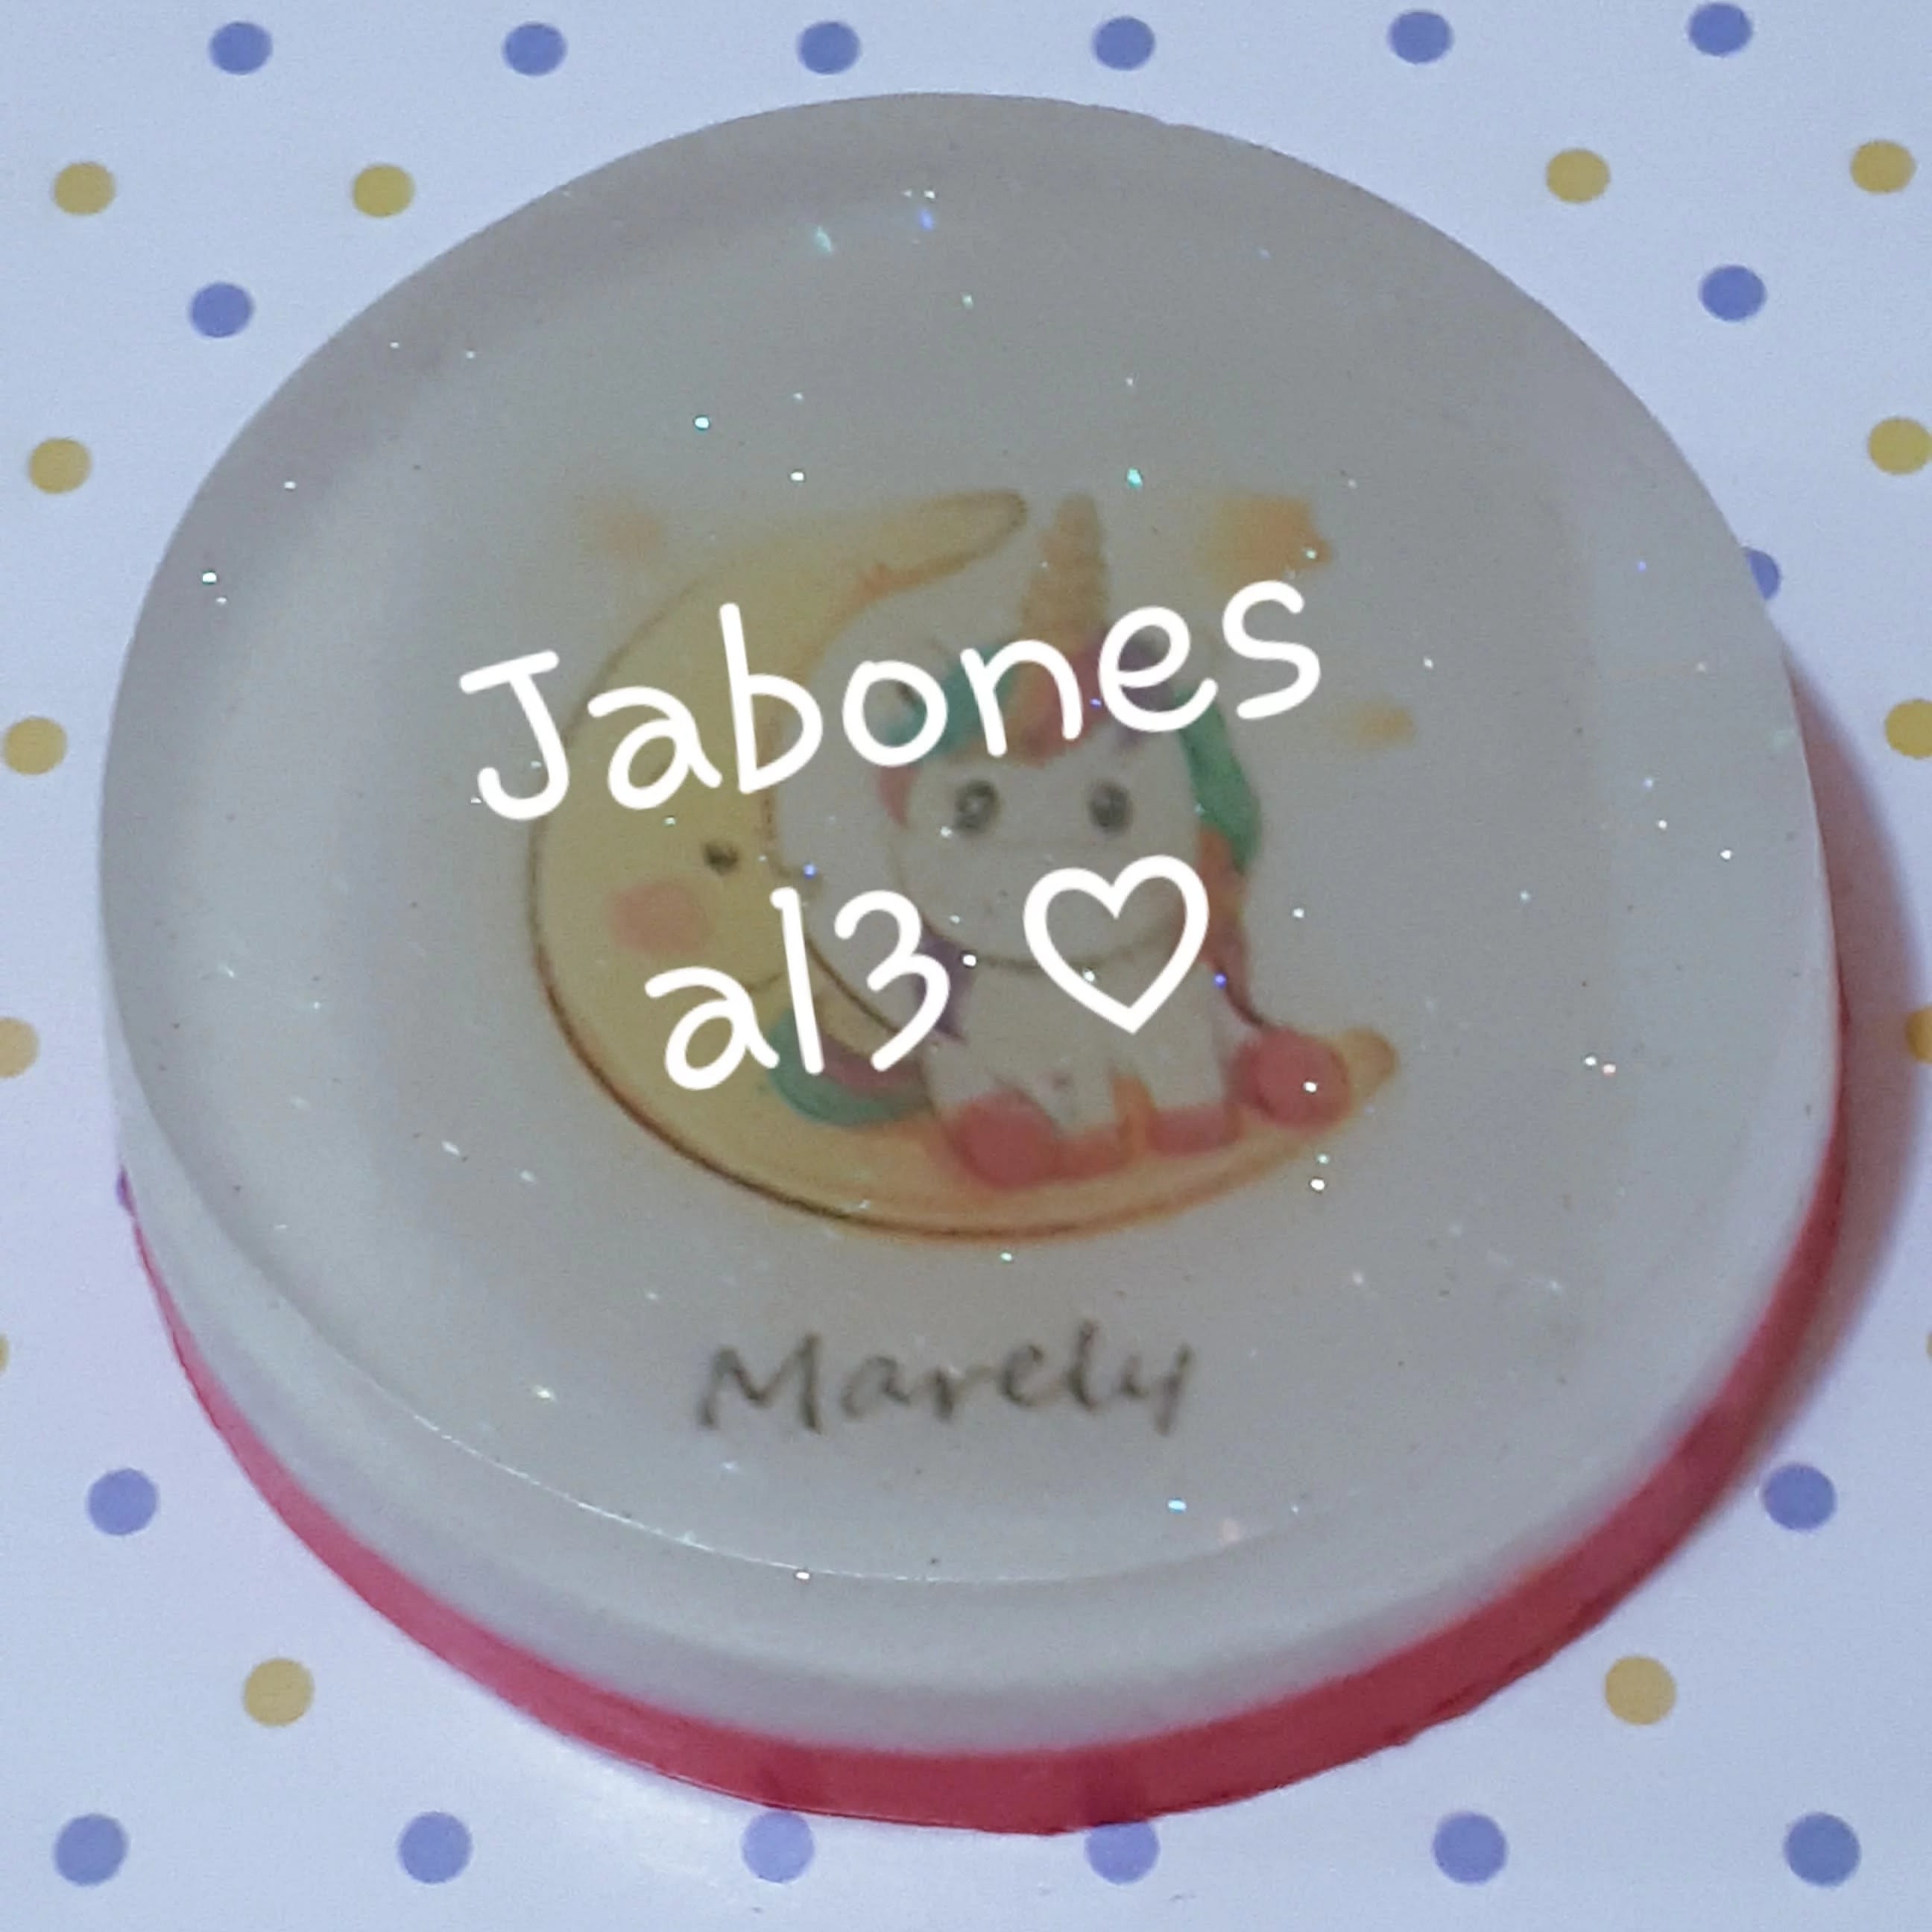 Jabones Al3 ♡